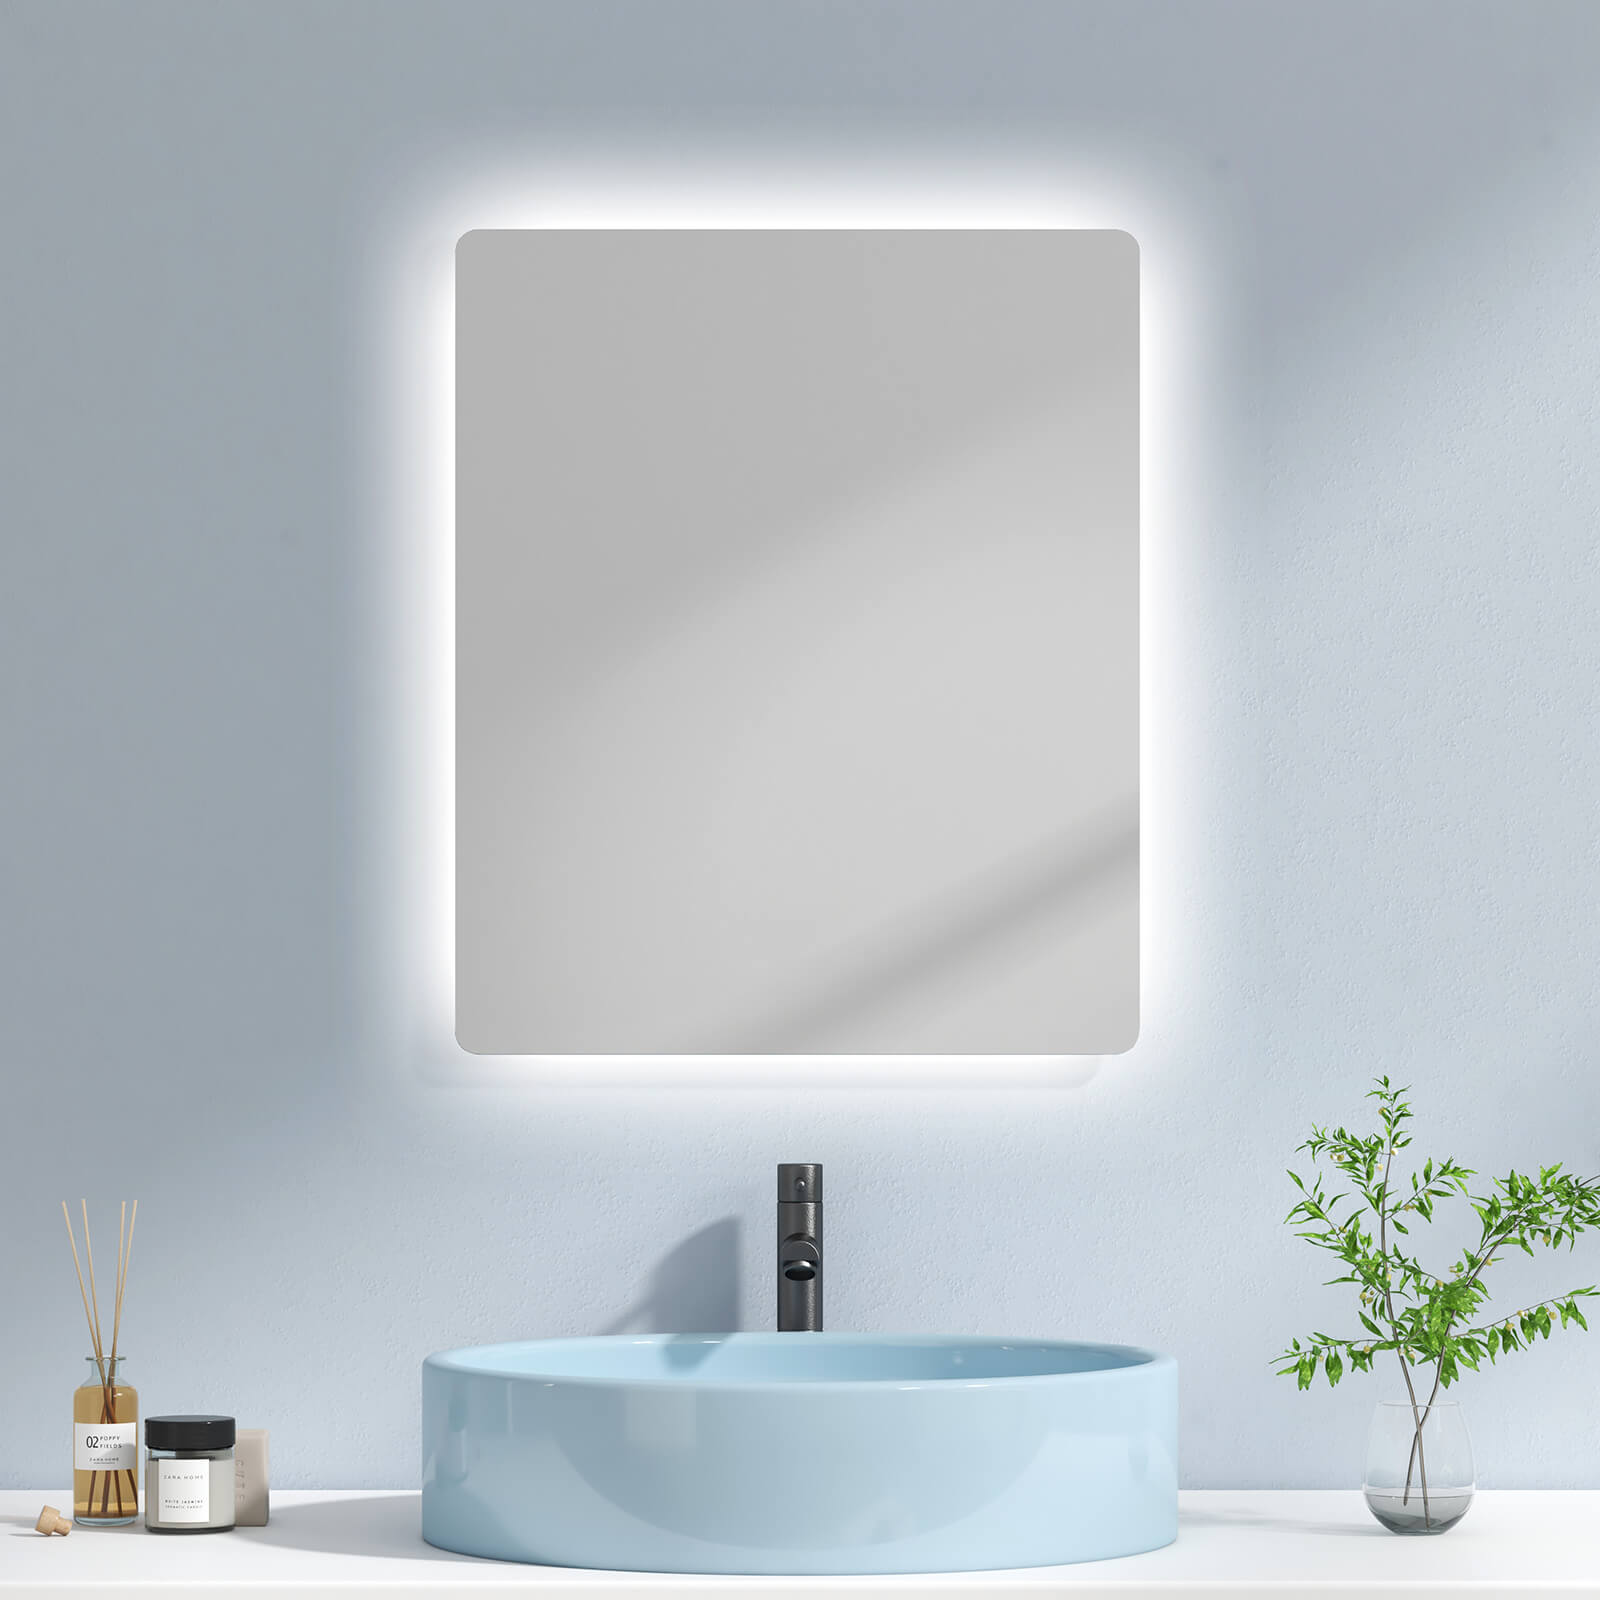 EMKE Badspiegel „LM09“ Badezimmerspiegel mit integrierter Beleuchtung und vielseitigen Funktionen, rechteckig 50×60+knopfschalter+2 Lichtfarben (3000/6500K)+Anti-beschlag